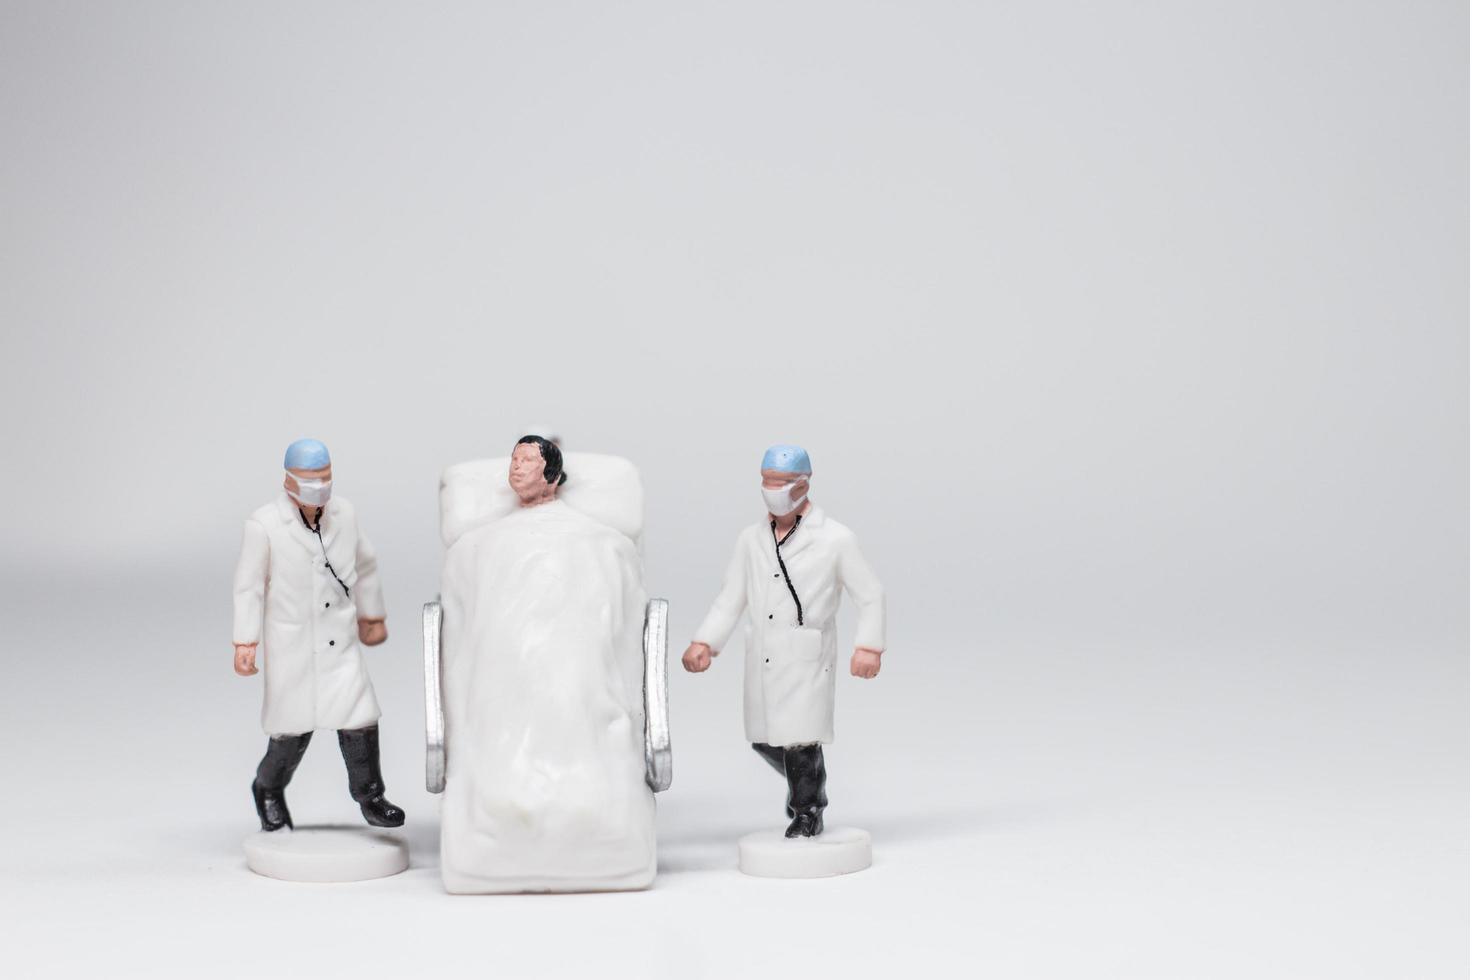 enkelt konceptfoto, minifigurläkare och sjuksköterskor minifigurevakuering av infekterade patienter foto